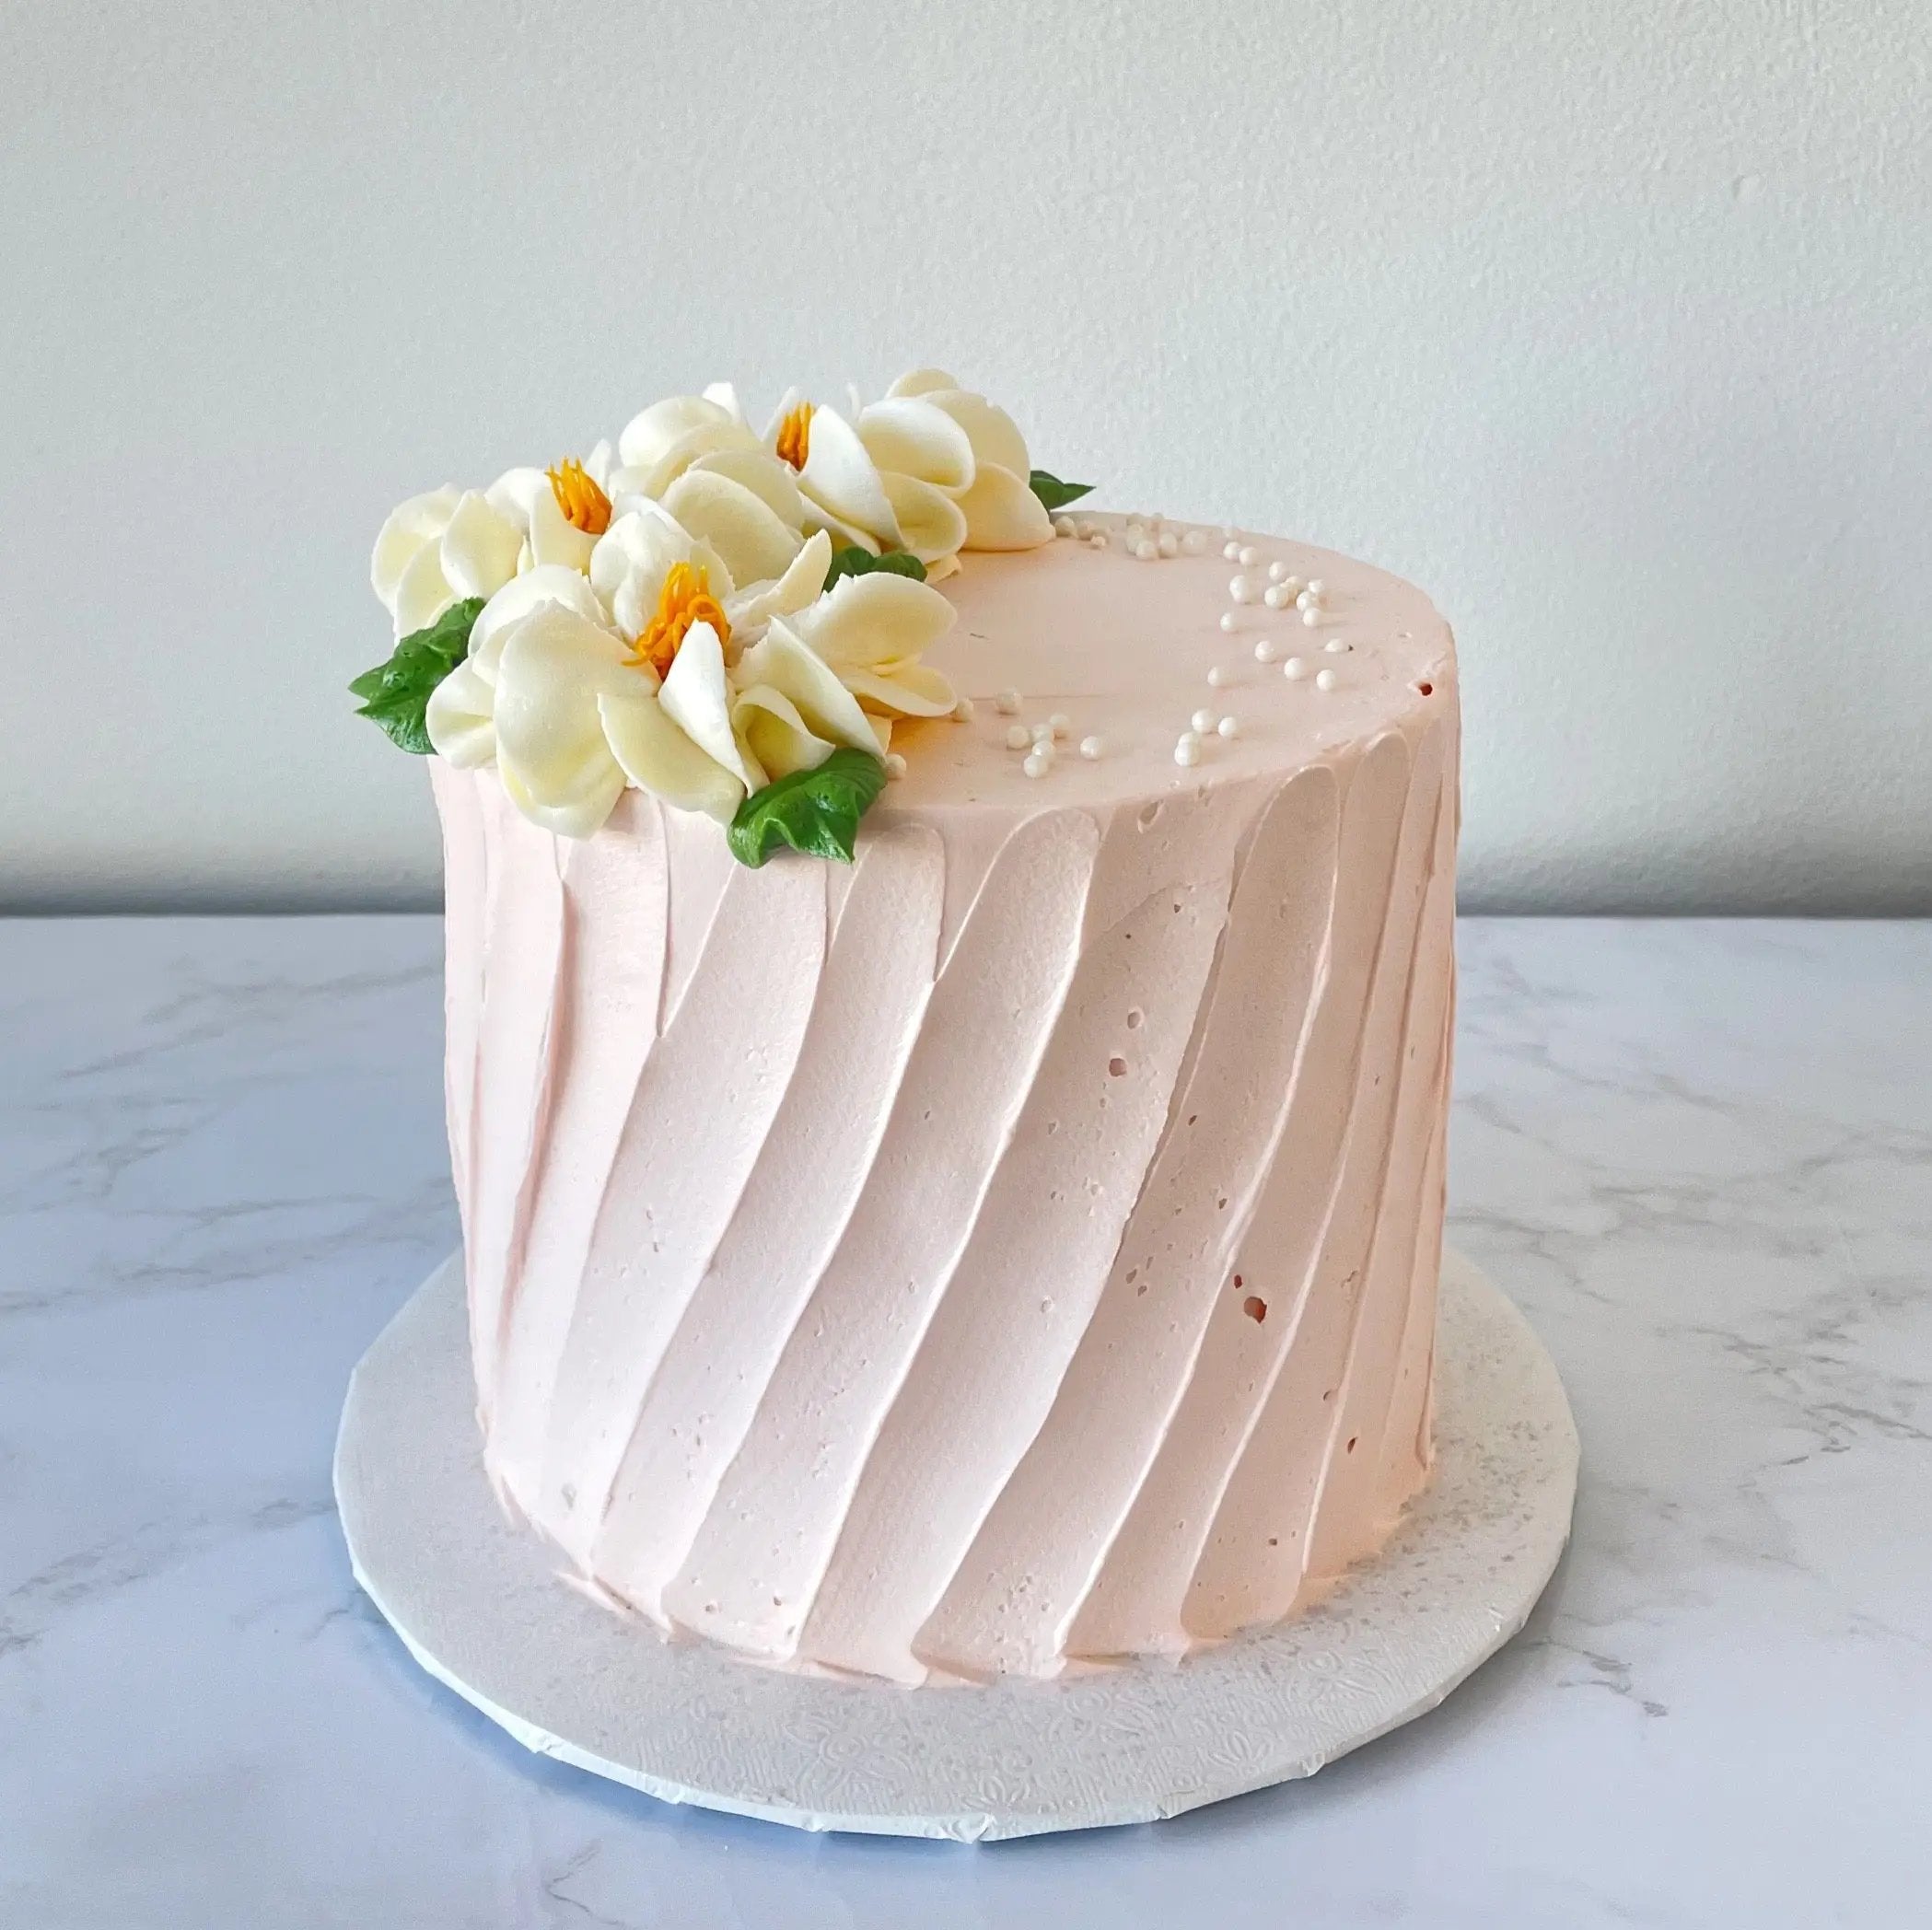 Floral Theme Cakes | My Bake Studio | Singapore